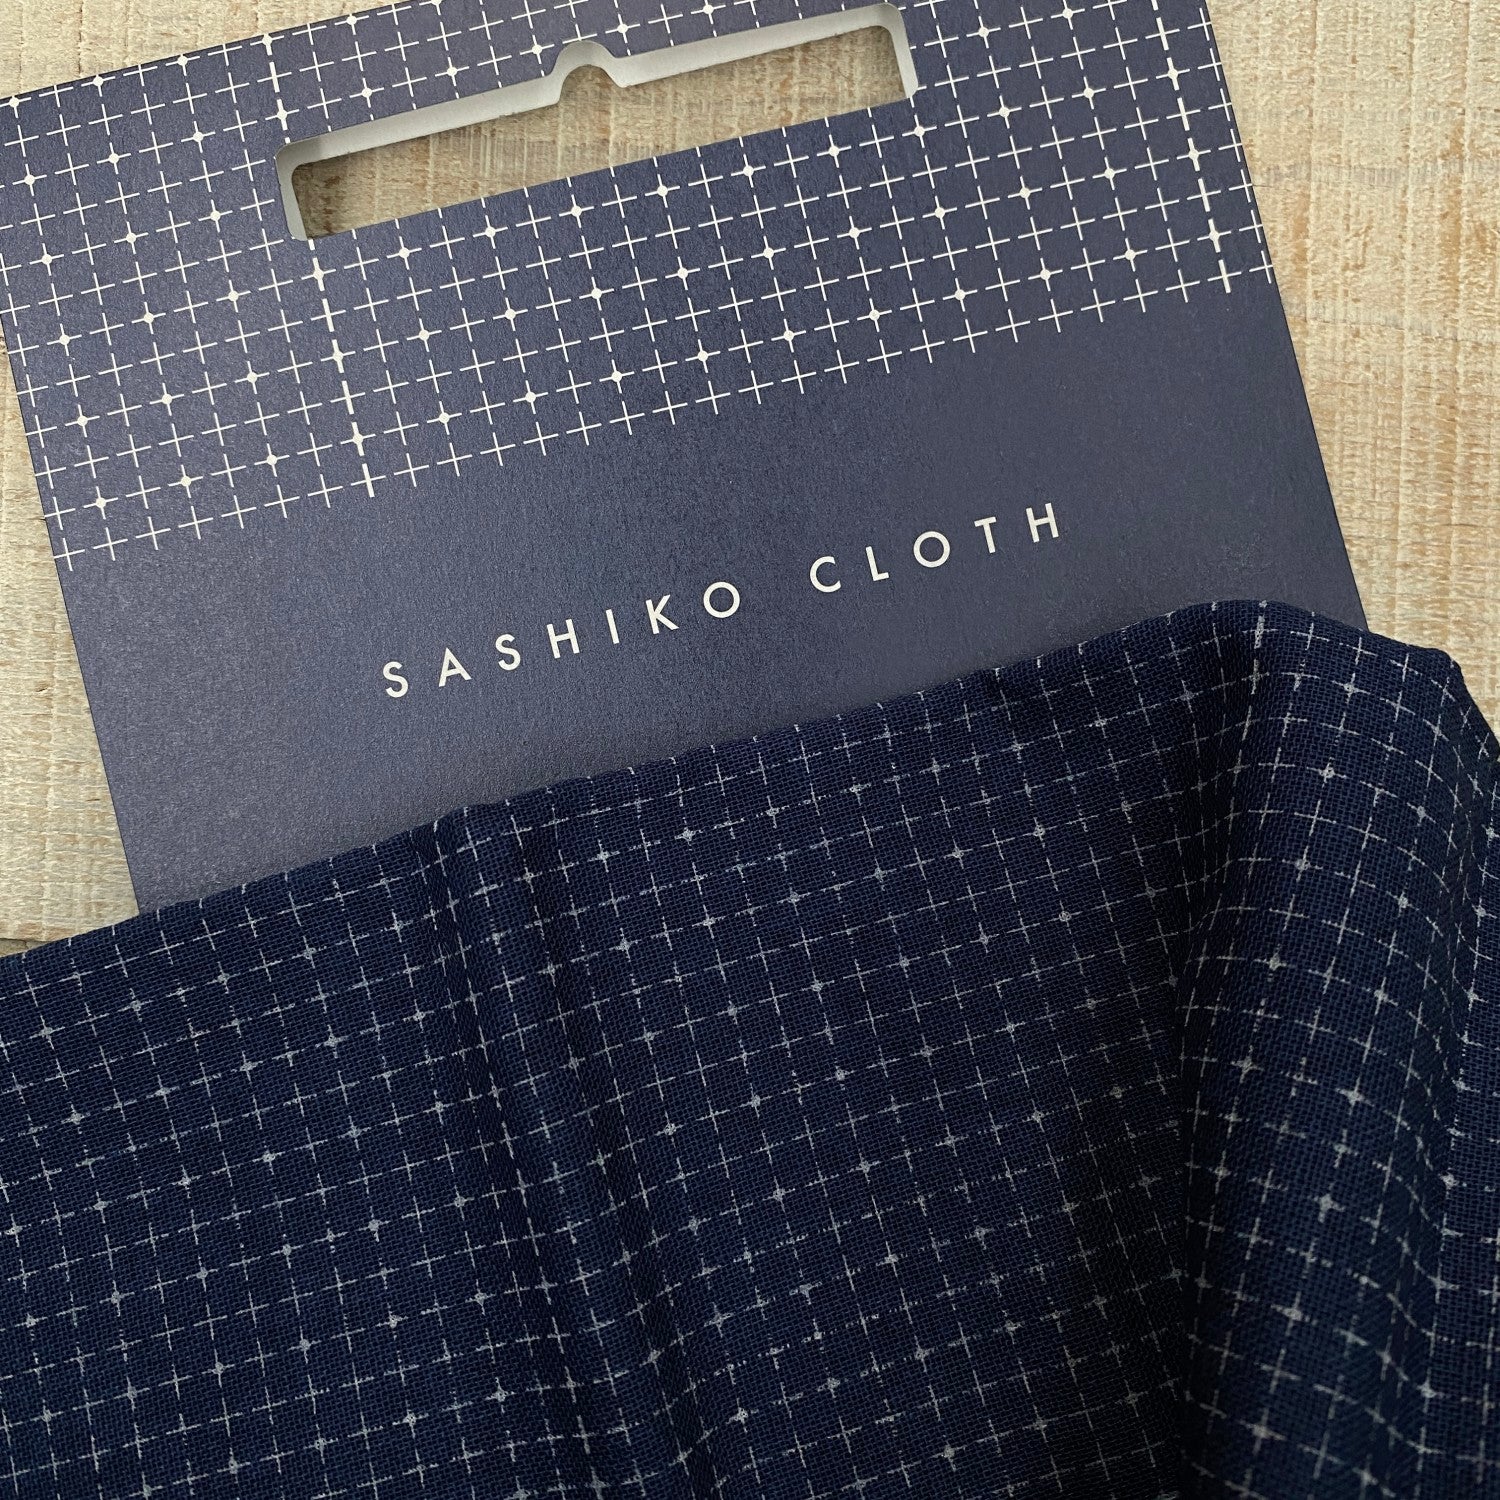 Daruma Sashiko Cloth